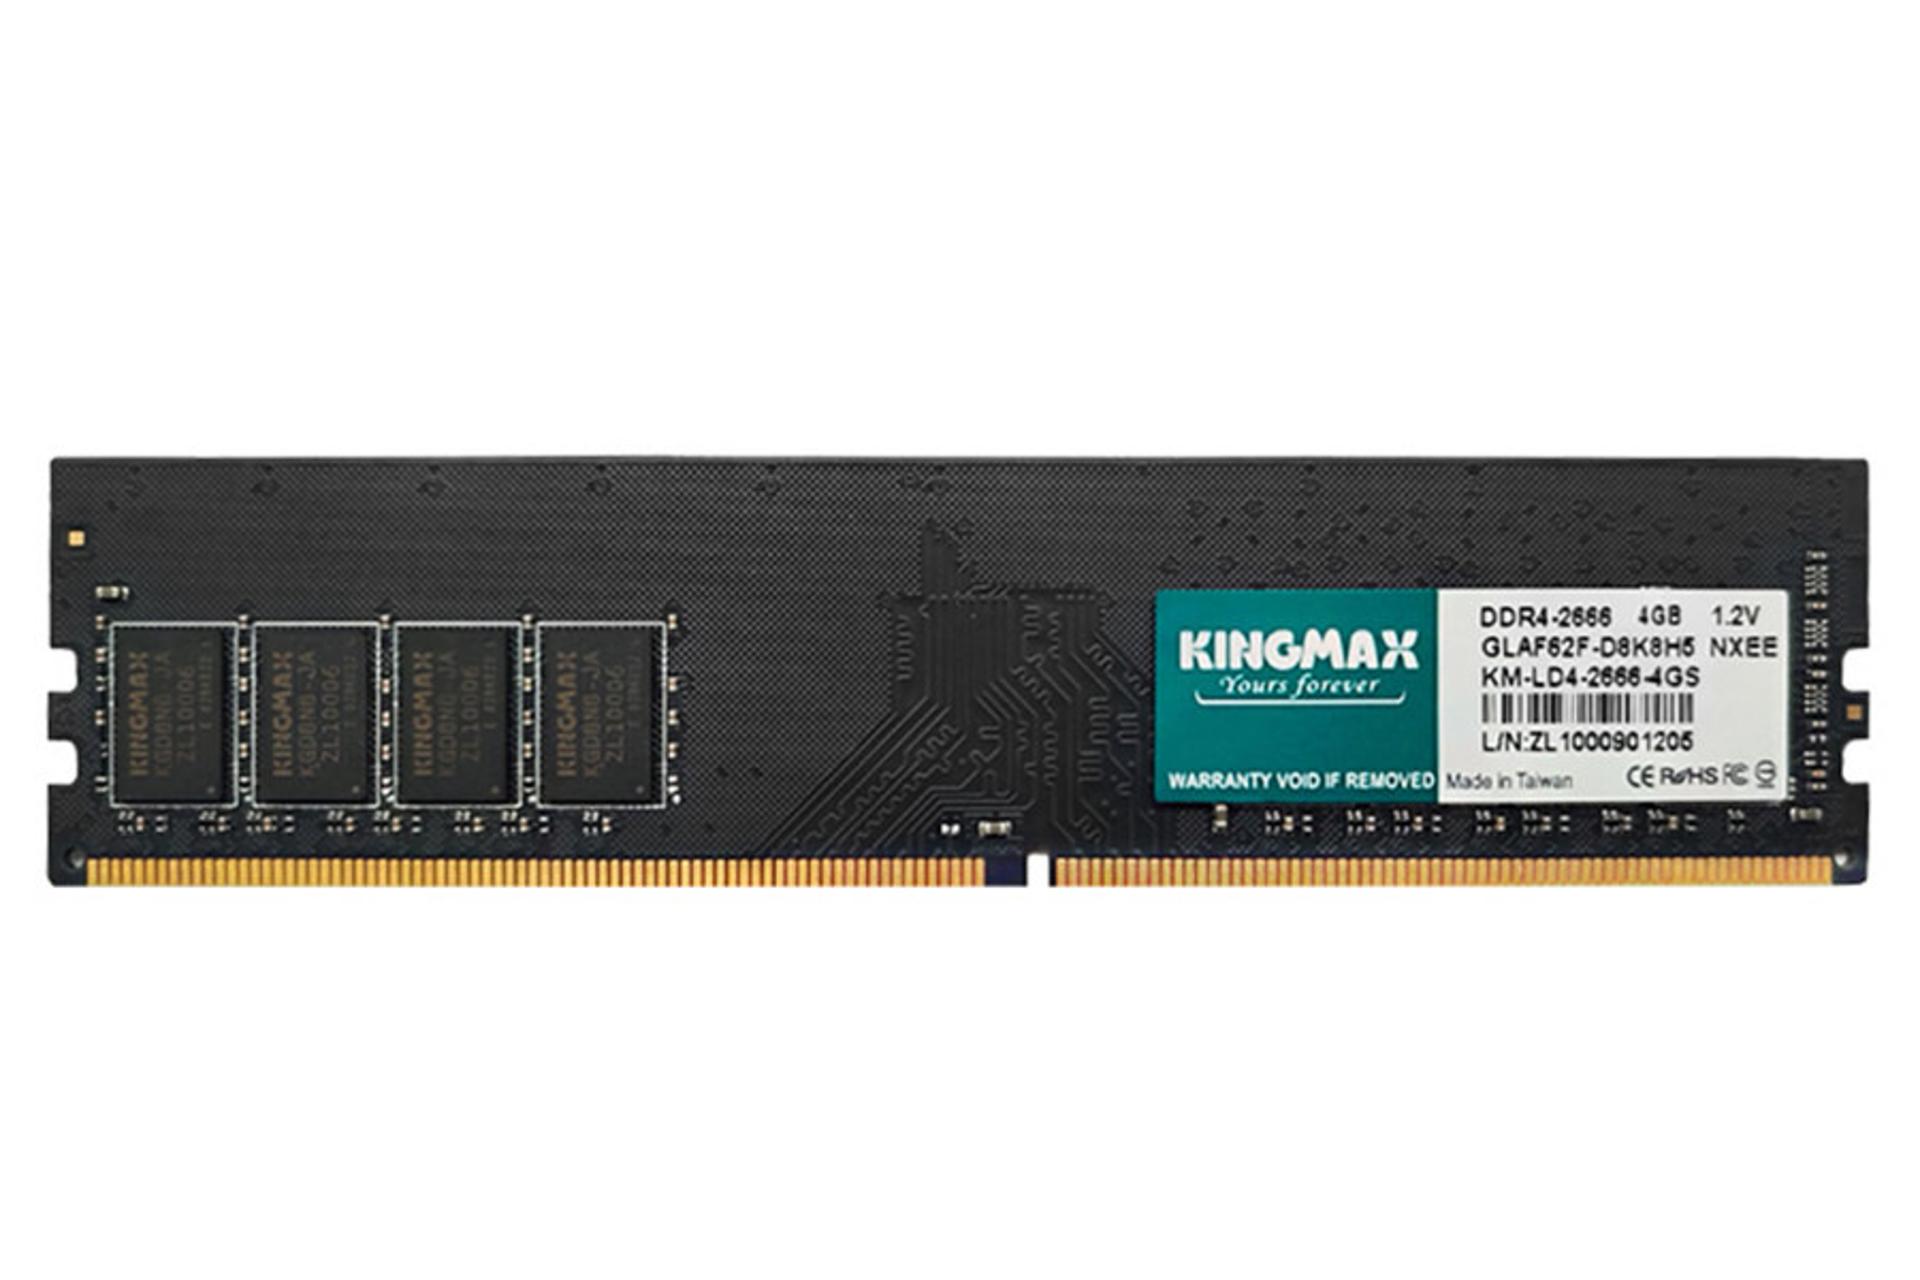 نمای جلوی رم کینگ مکس GLAF62F-D8K8H5 ظرفیت 4 گیگابایت از نوع DDR4-2666